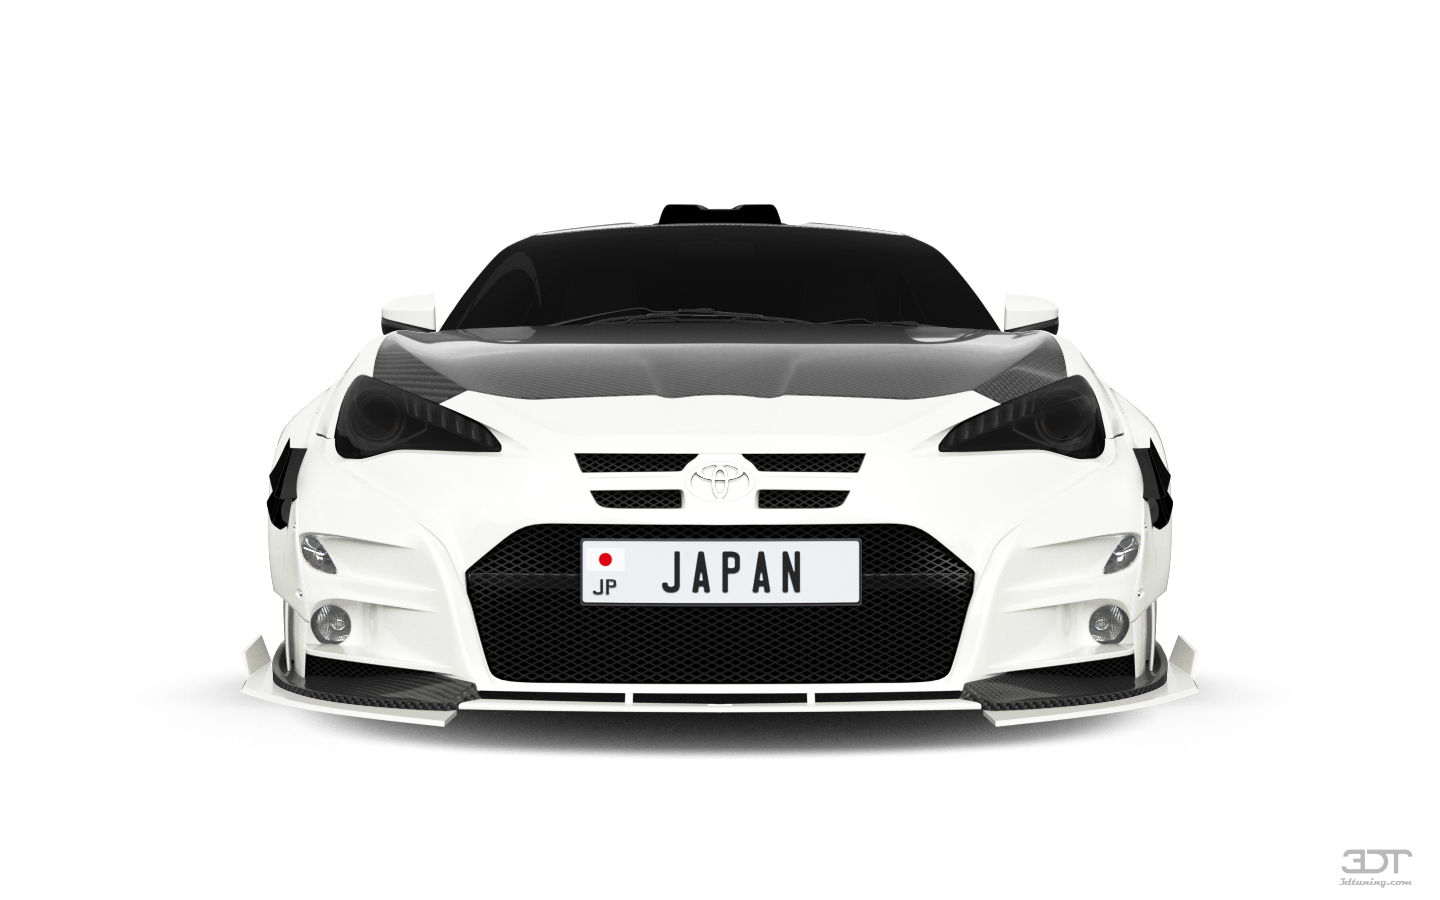 Toyota GT86 2 Door Coupe 2013